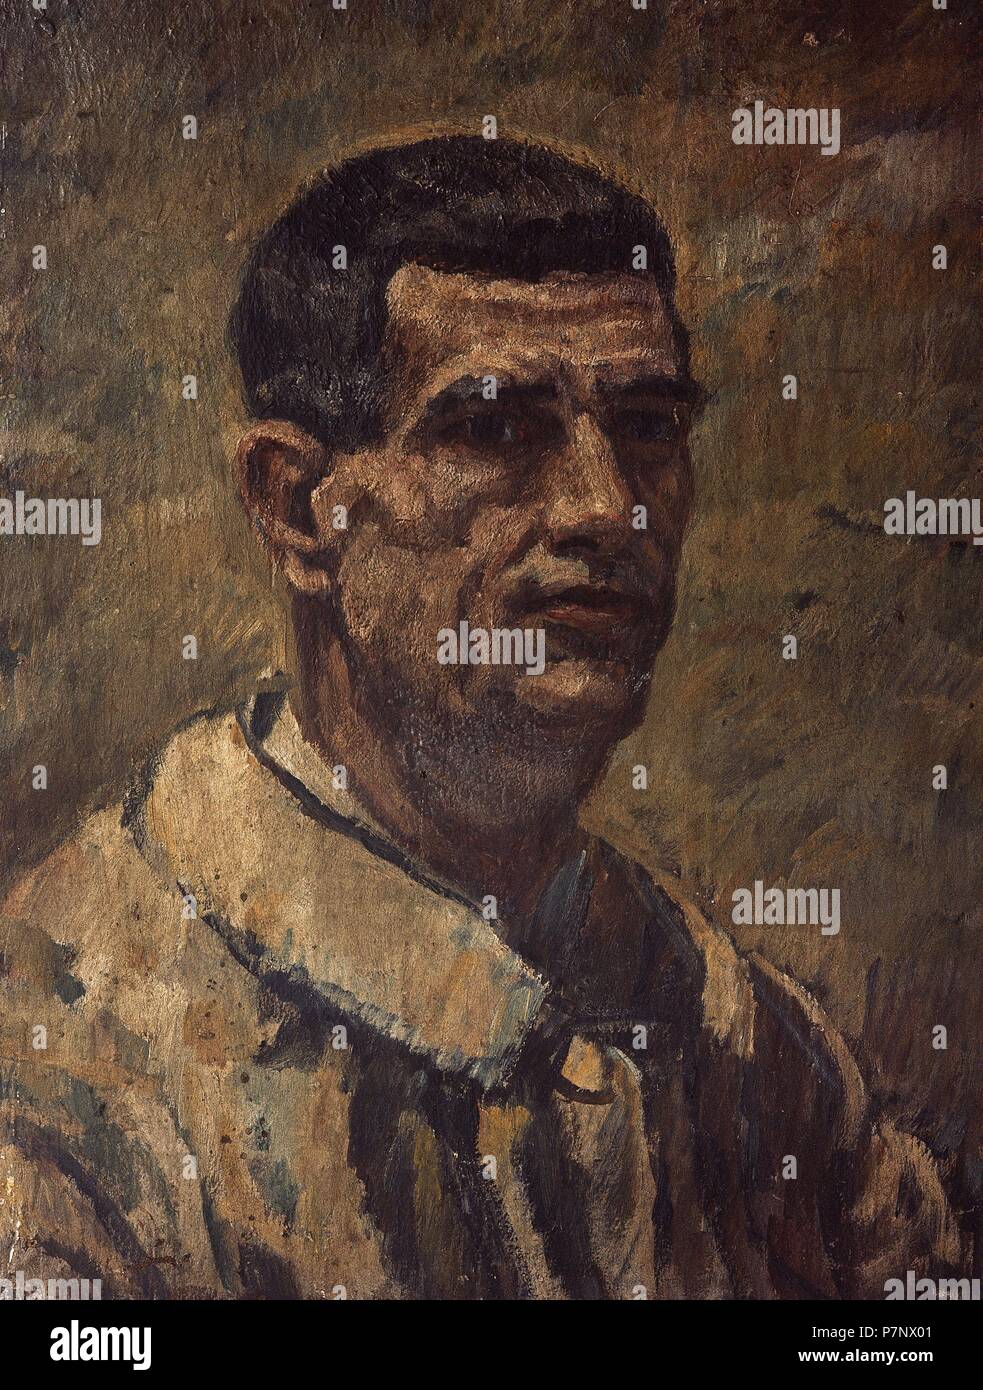 Francisco Iturrino (1864-1924). Peintre postimpressionniste espagnol du Pays Basque. Auto-portrait, 1900. Museo de Bellas Artes. Bilbao. L'Espagne. Banque D'Images